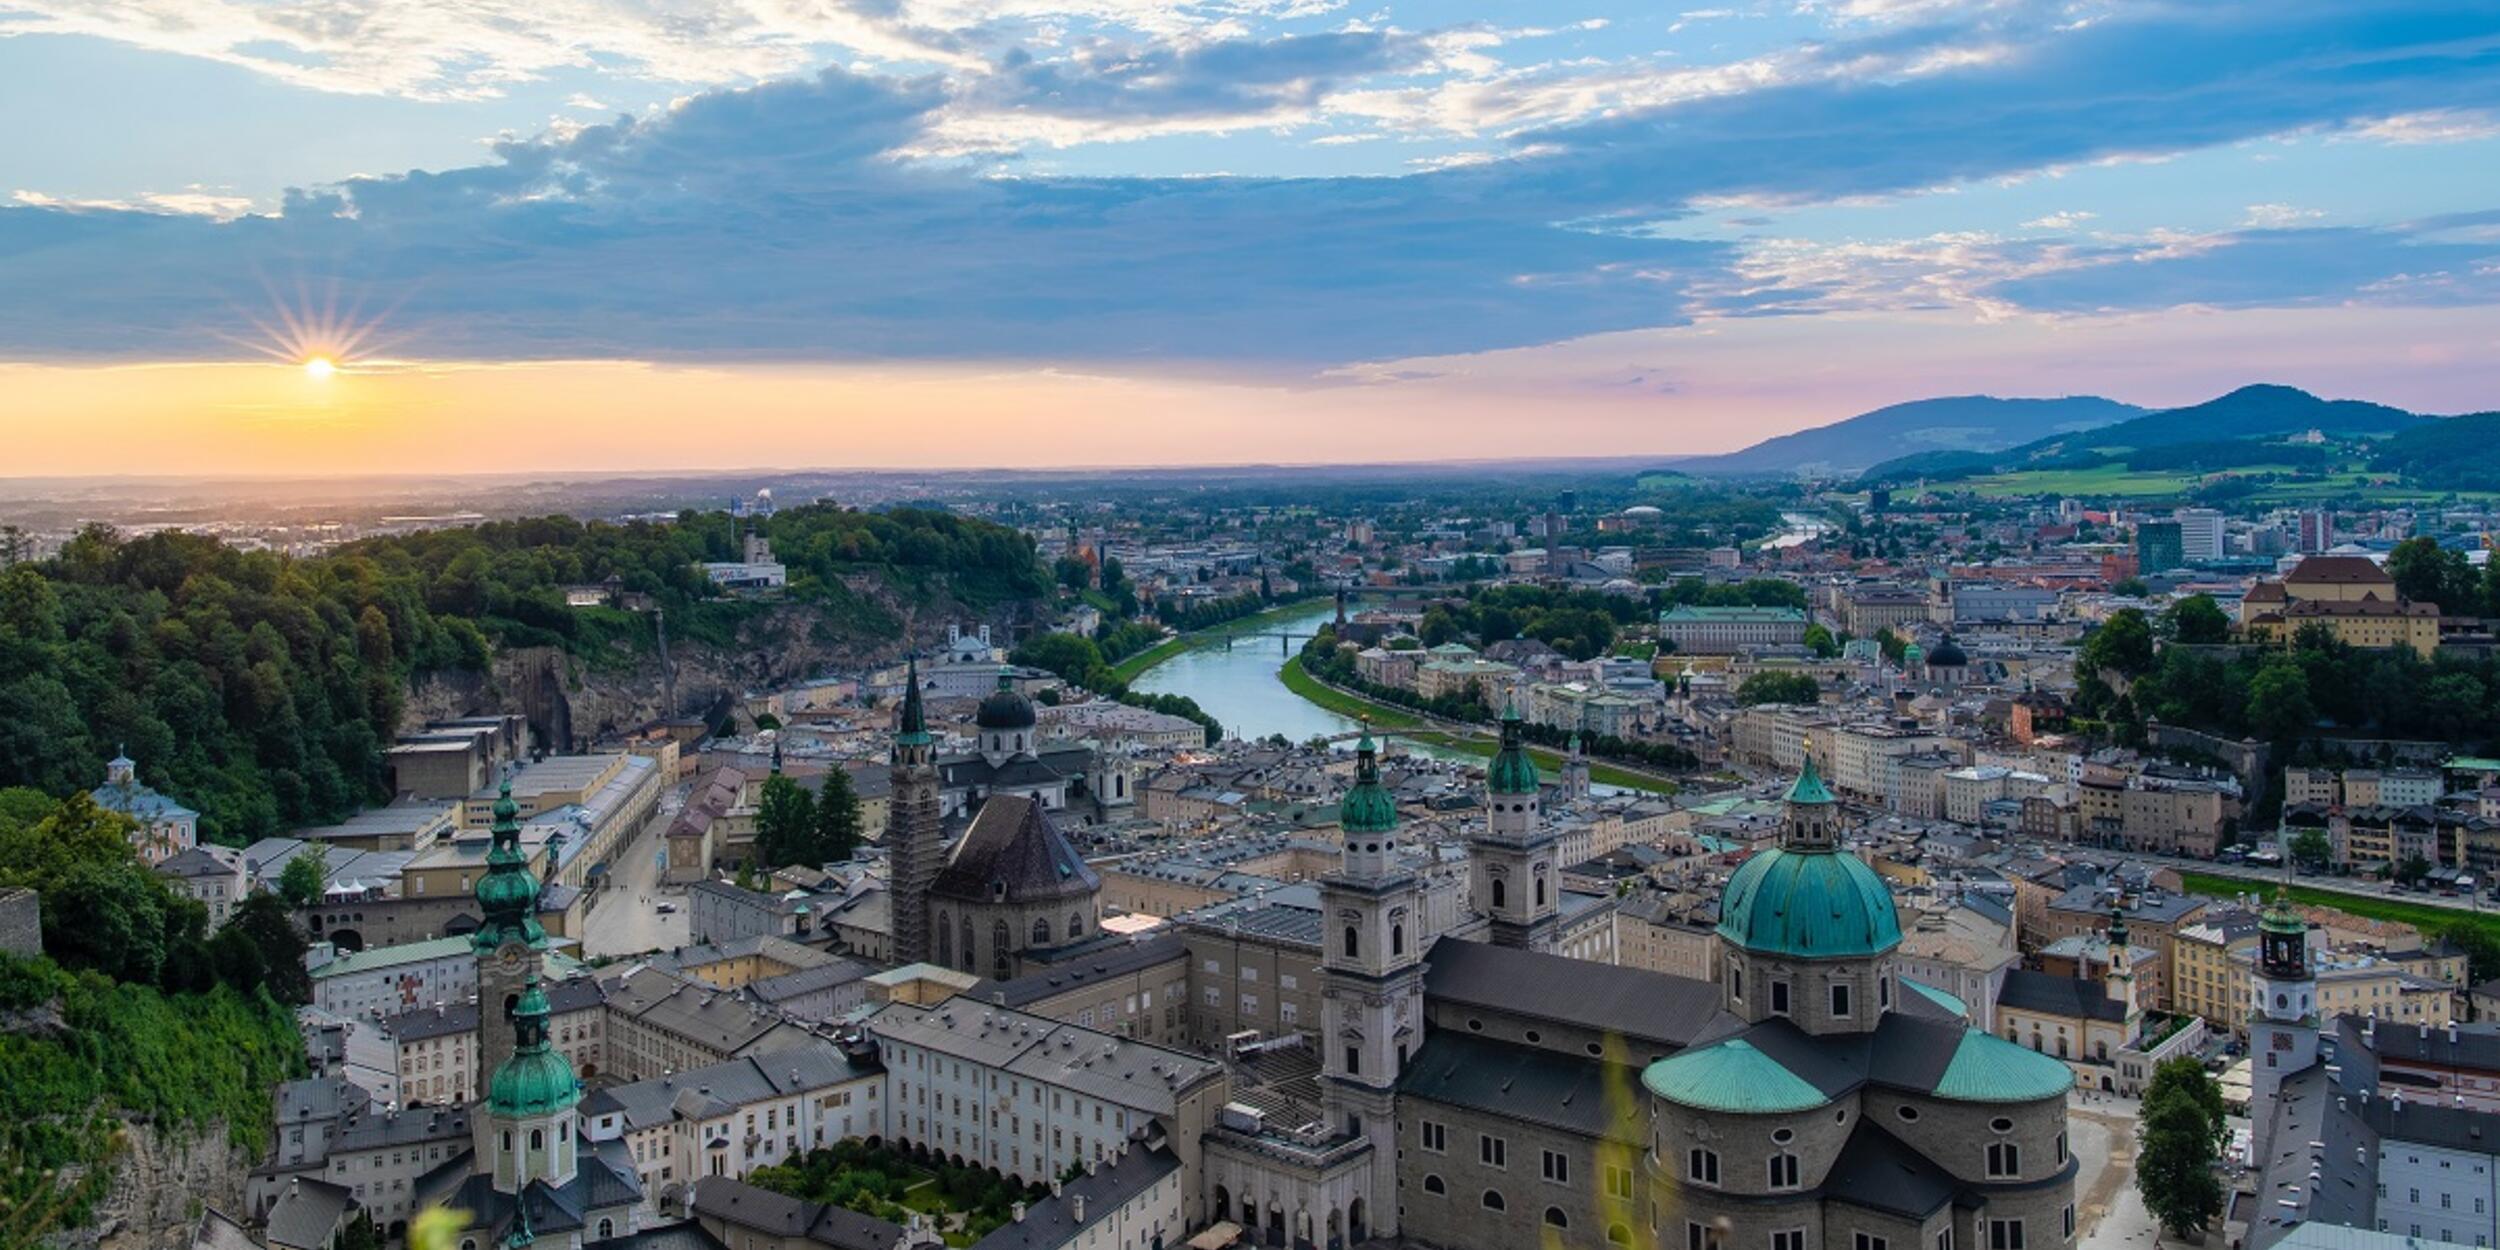 Blick von der Festung auf Salzburg, Sonnenuntergang | © Aki on Unsplash